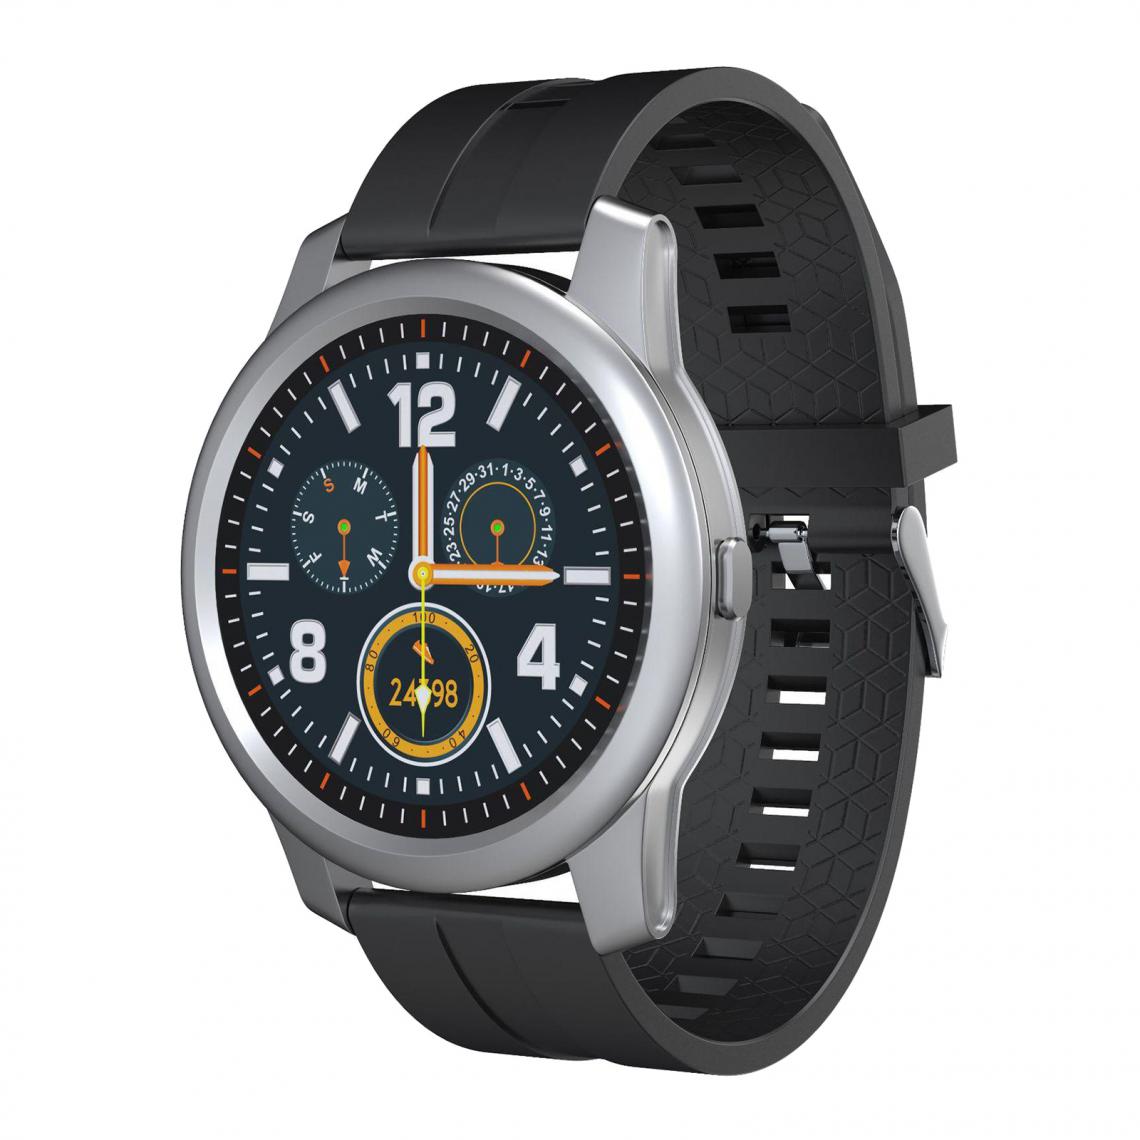 marque generique - 1.28 Pouces F12 Bluetooth 5.0 Fitness Tracker Smart Watch Bracelet En Silicone Noir - Montre connectée